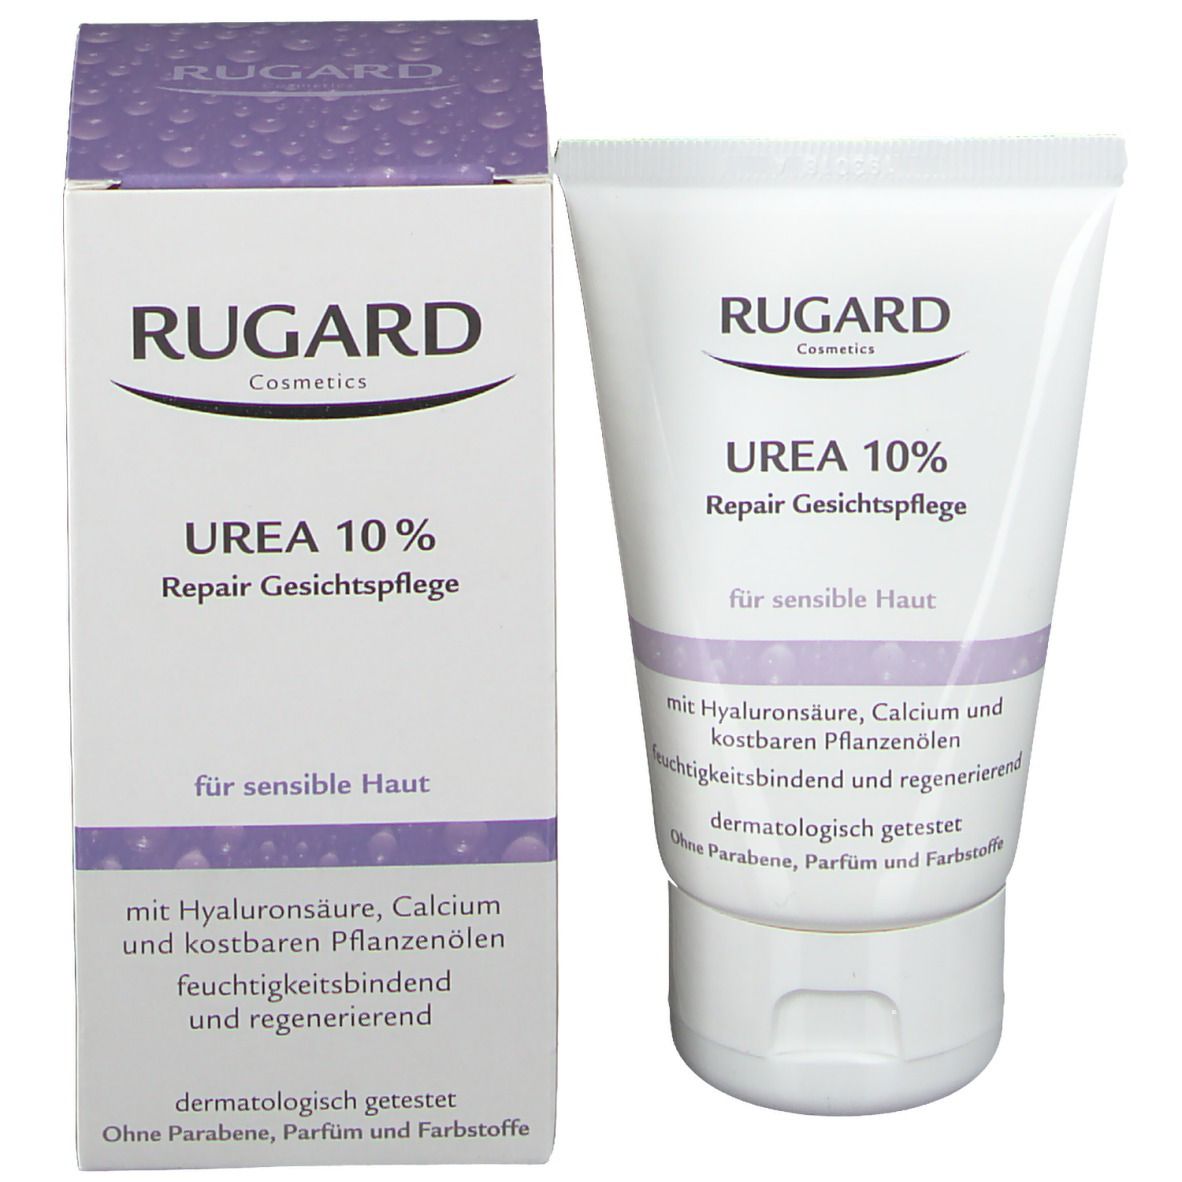 RUGARD Urea 10% Gesichtspflege